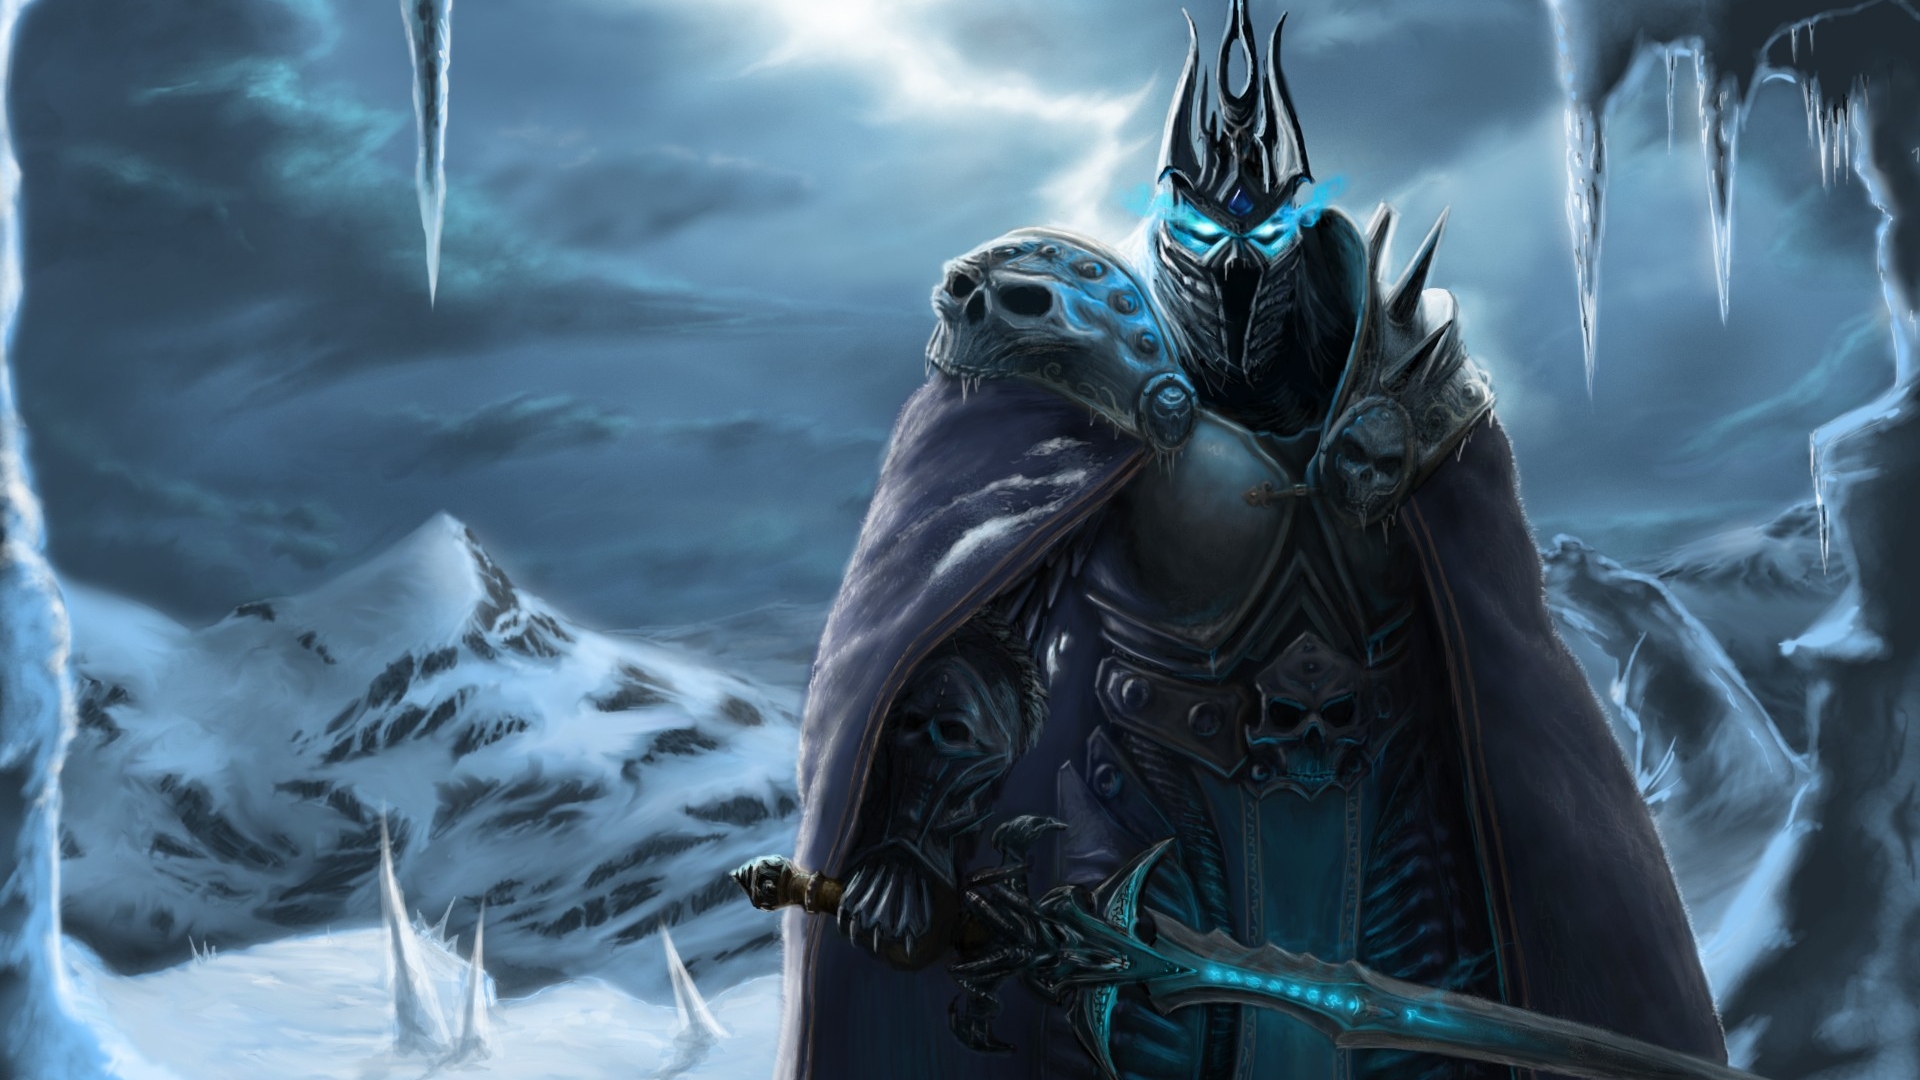 Скачать обои Мир Warcraft: Восстание Короля Лича на телефон бесплатно